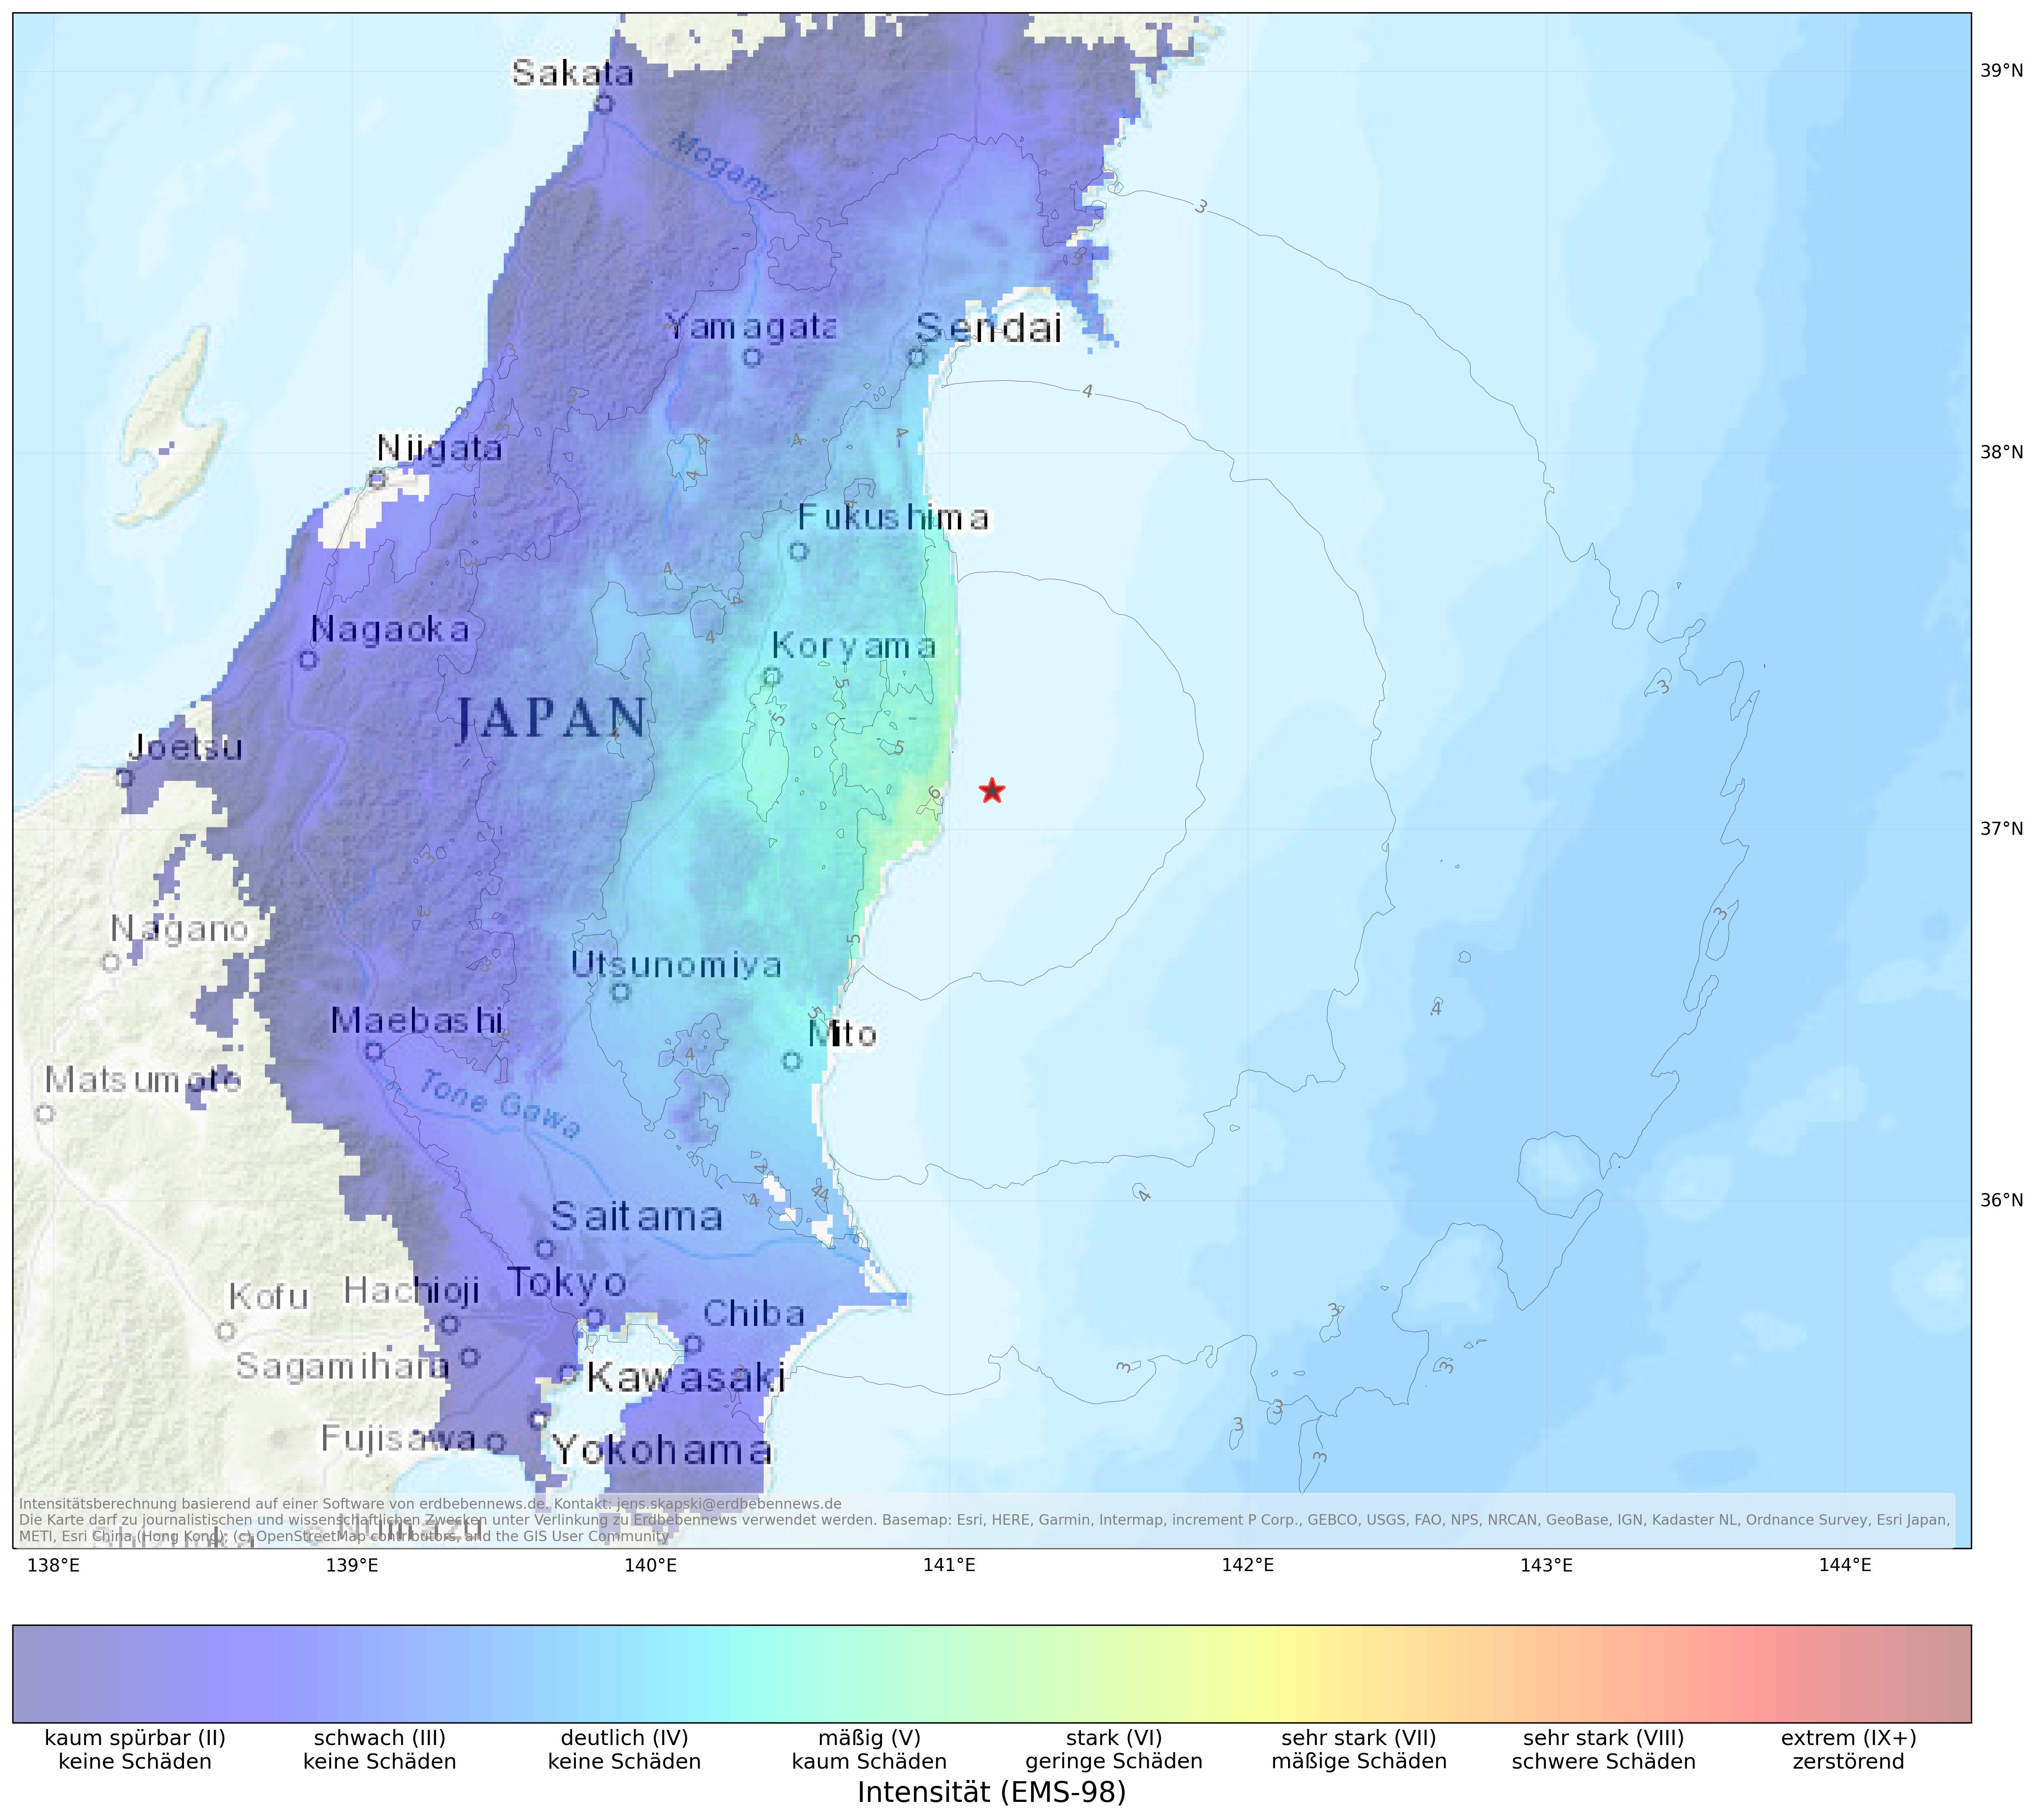 Berechnete Intensität (ShakeMap) des Erdbebens der Stärke 5.6 am 14. März, 16:14 Uhr in Japan